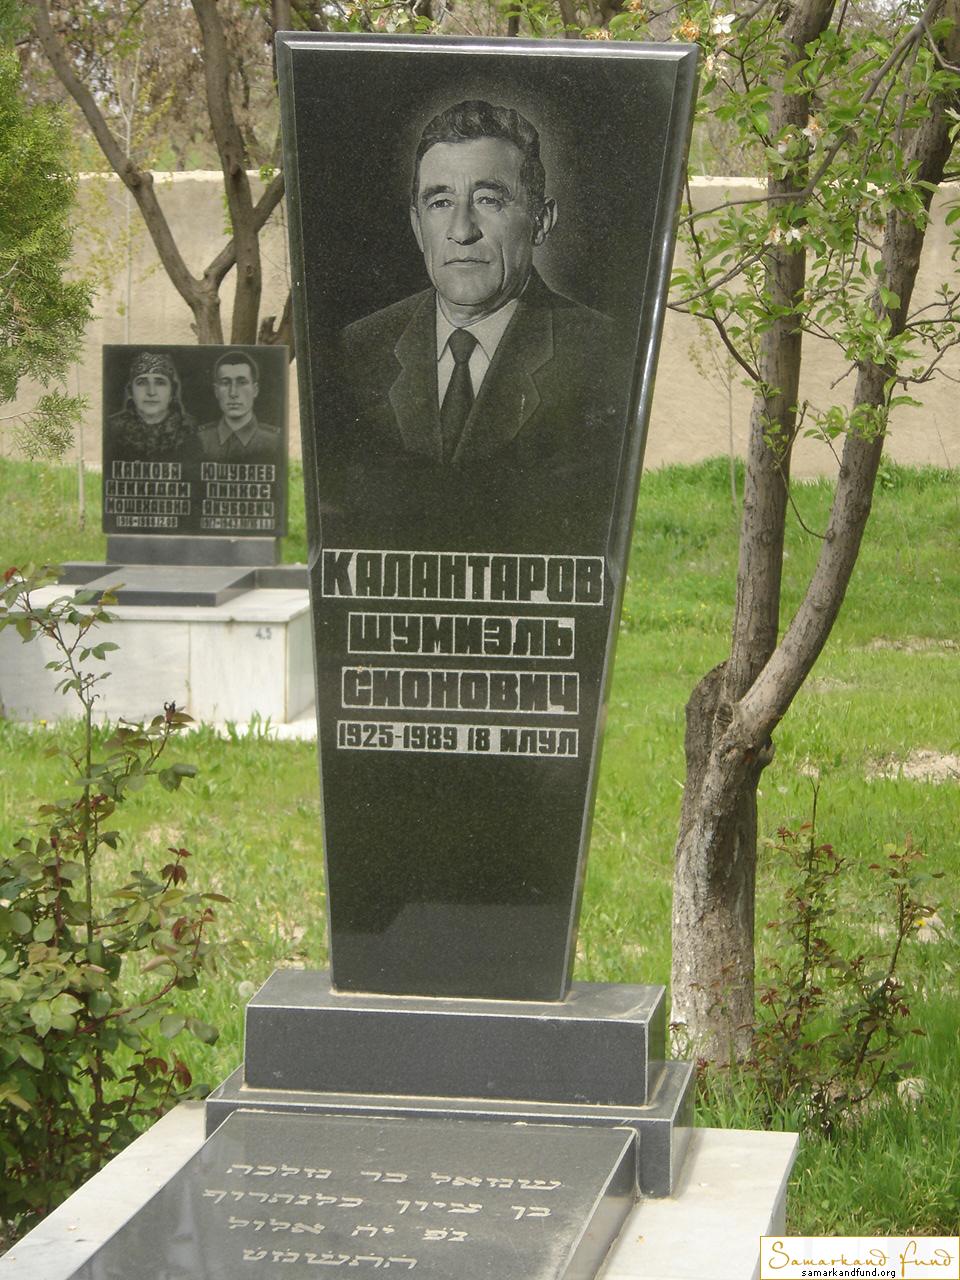 Калантаров Шумиэль Сионович  1925 - 1989 зах. 4.67  №4.JPG